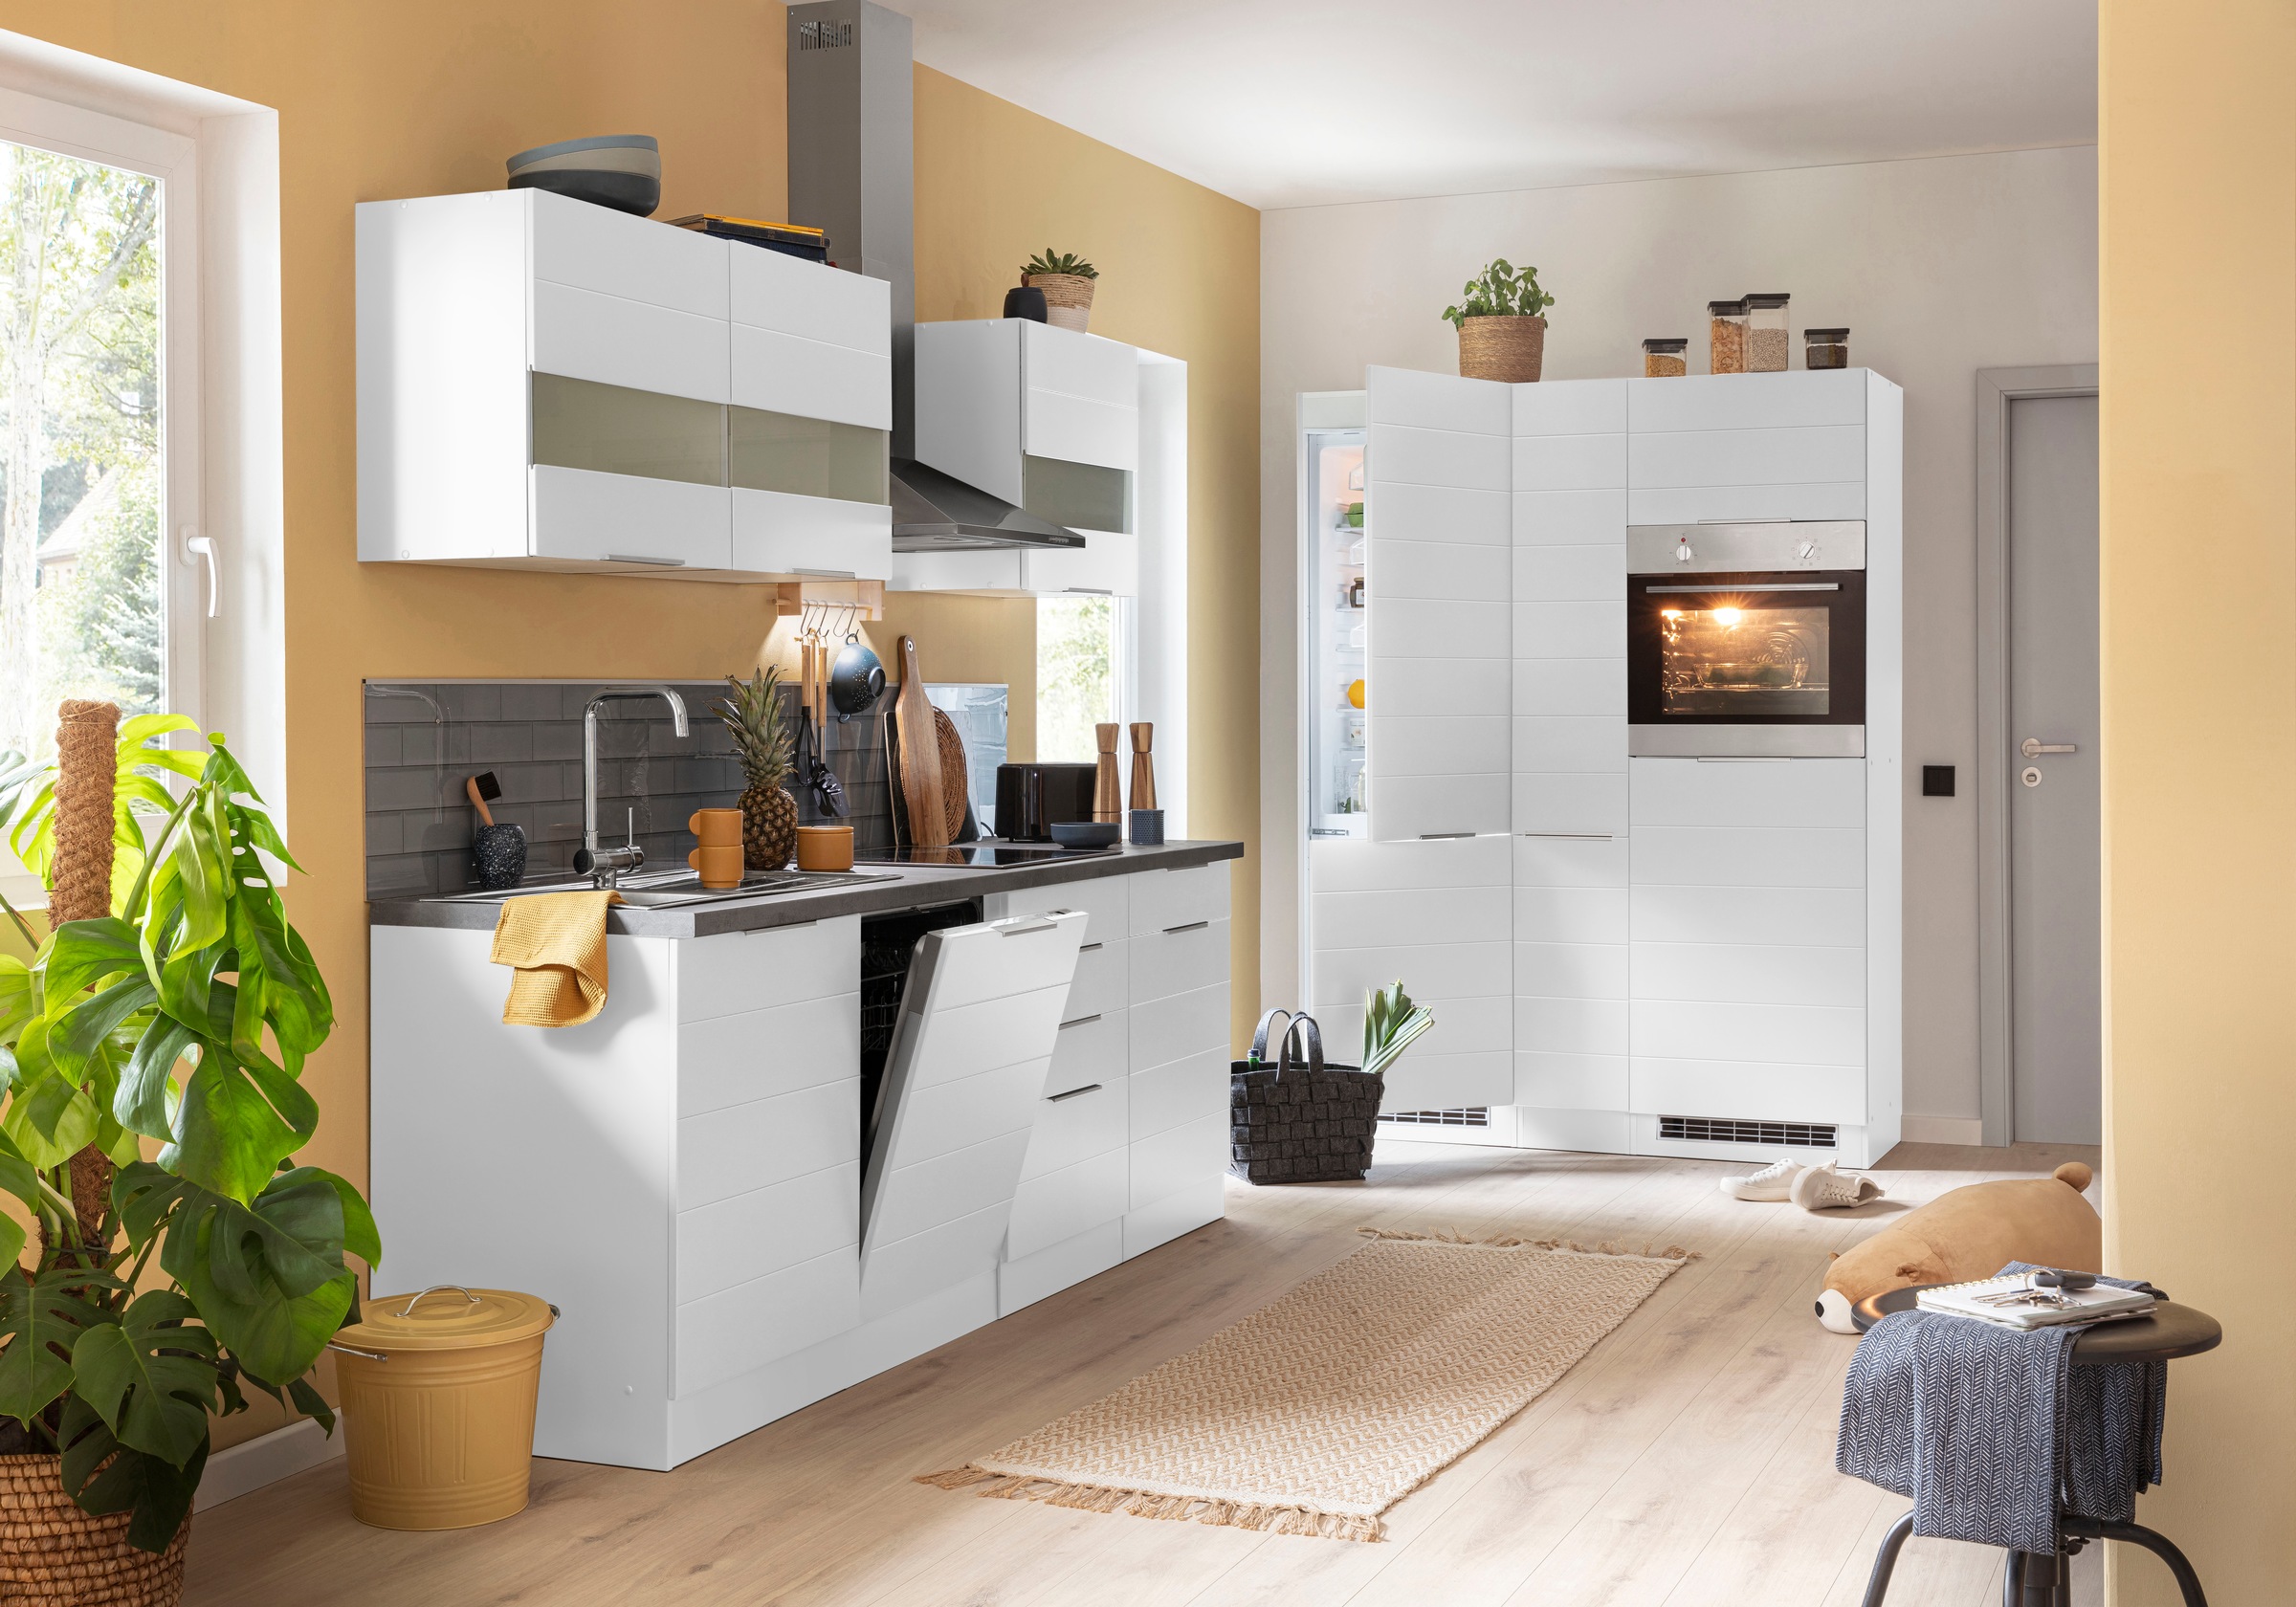 KOCHSTATION Küche »KS-Luhe«, 390 cm breit, wahlweise mit oder ohne E-Geräten, gefräste MDF-Fronten